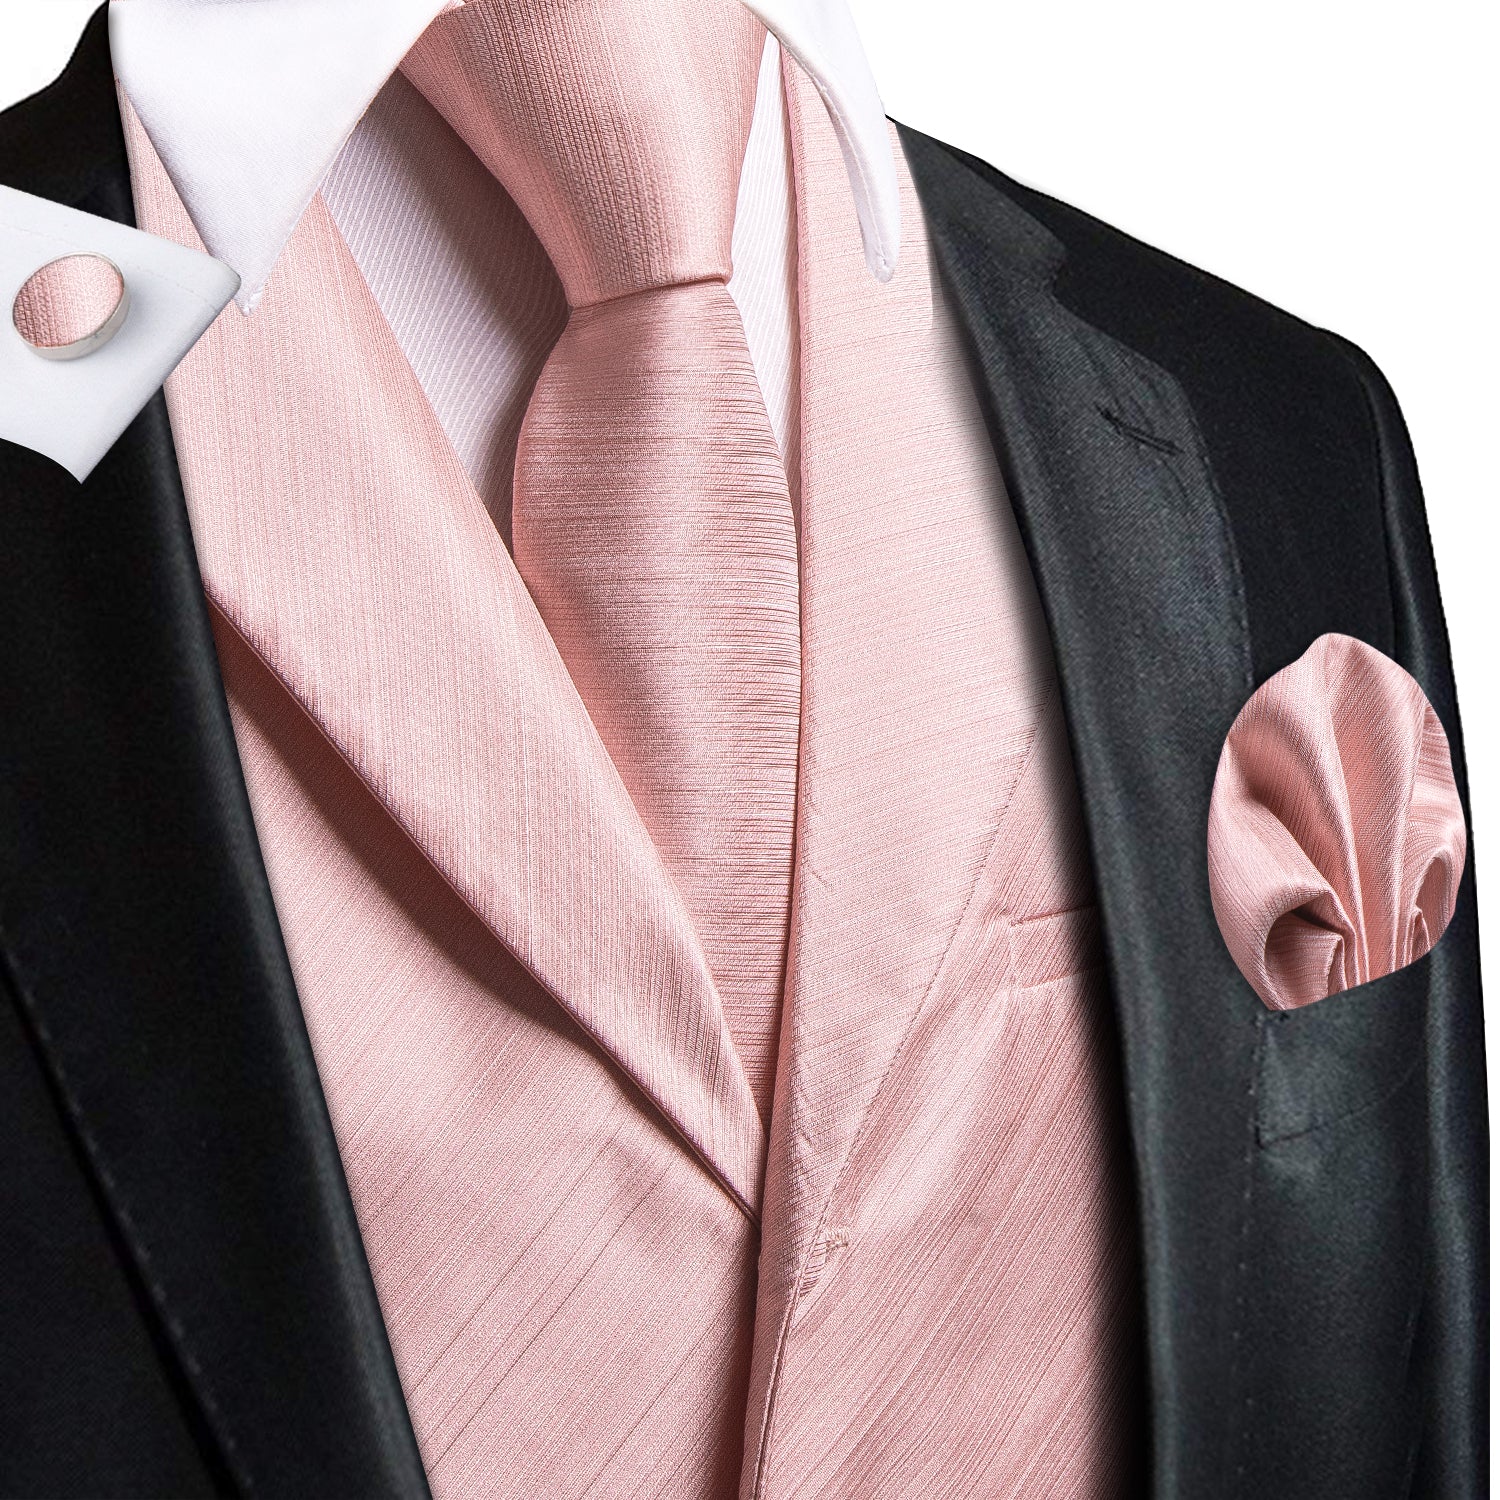 Baby Pink Solid Silk Men's Collar Vest Hanky Cufflinks Tie Set Waistcoat Suit Set